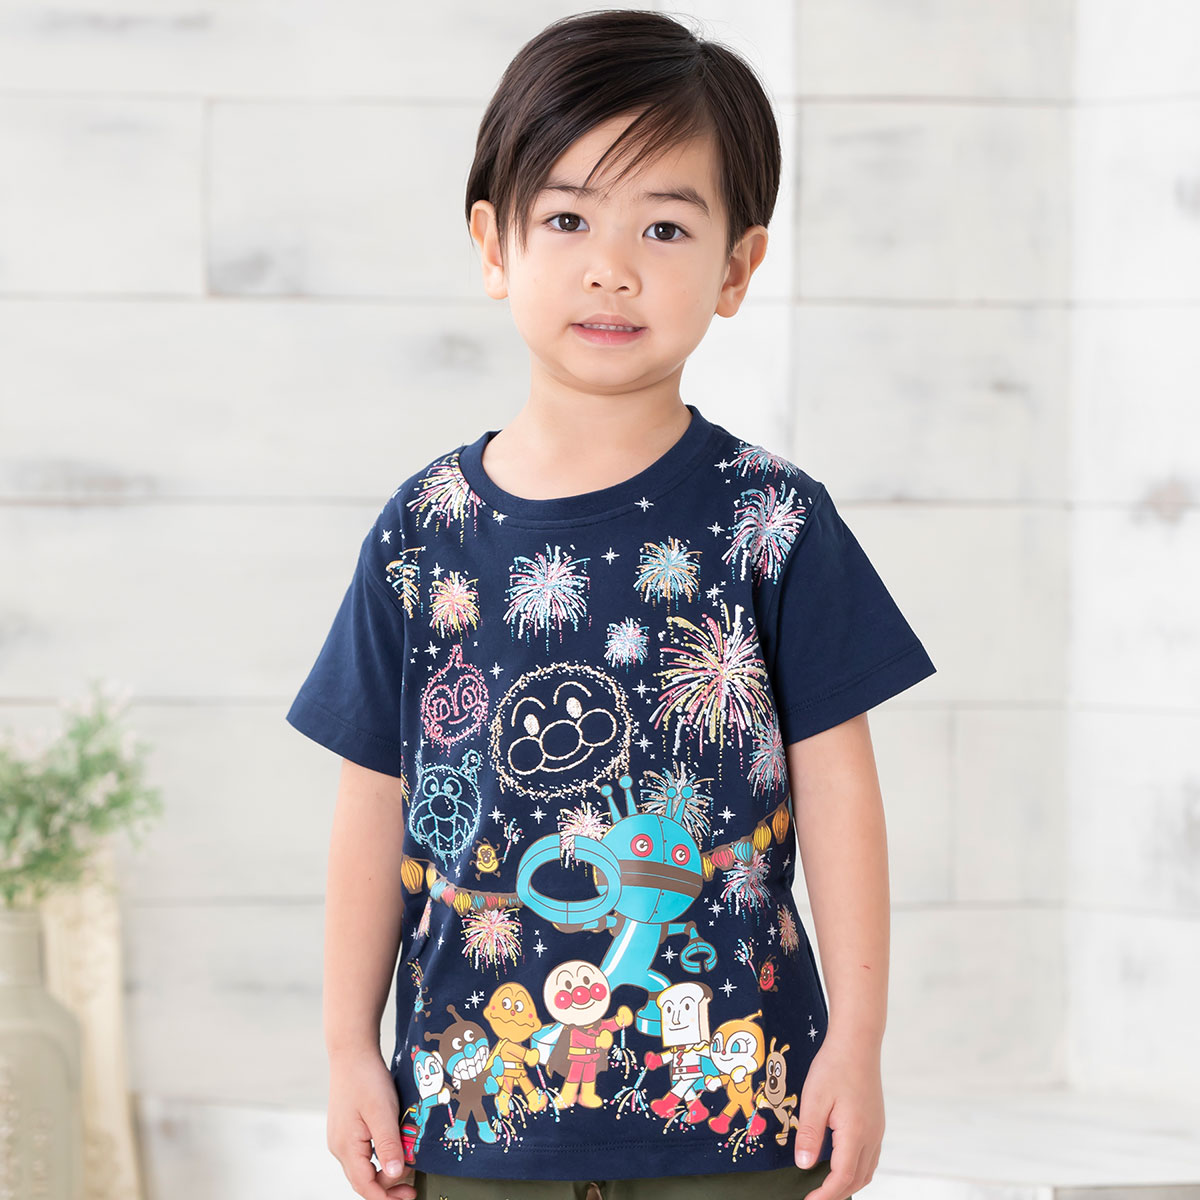 集合花火柄tシャツ アイテム アンパンマンキッズコレクション Anpanman Kids Collection それいけ アンパンマン の楽しい世界観と おしゃれなデザインを融合させた子供服ブランド